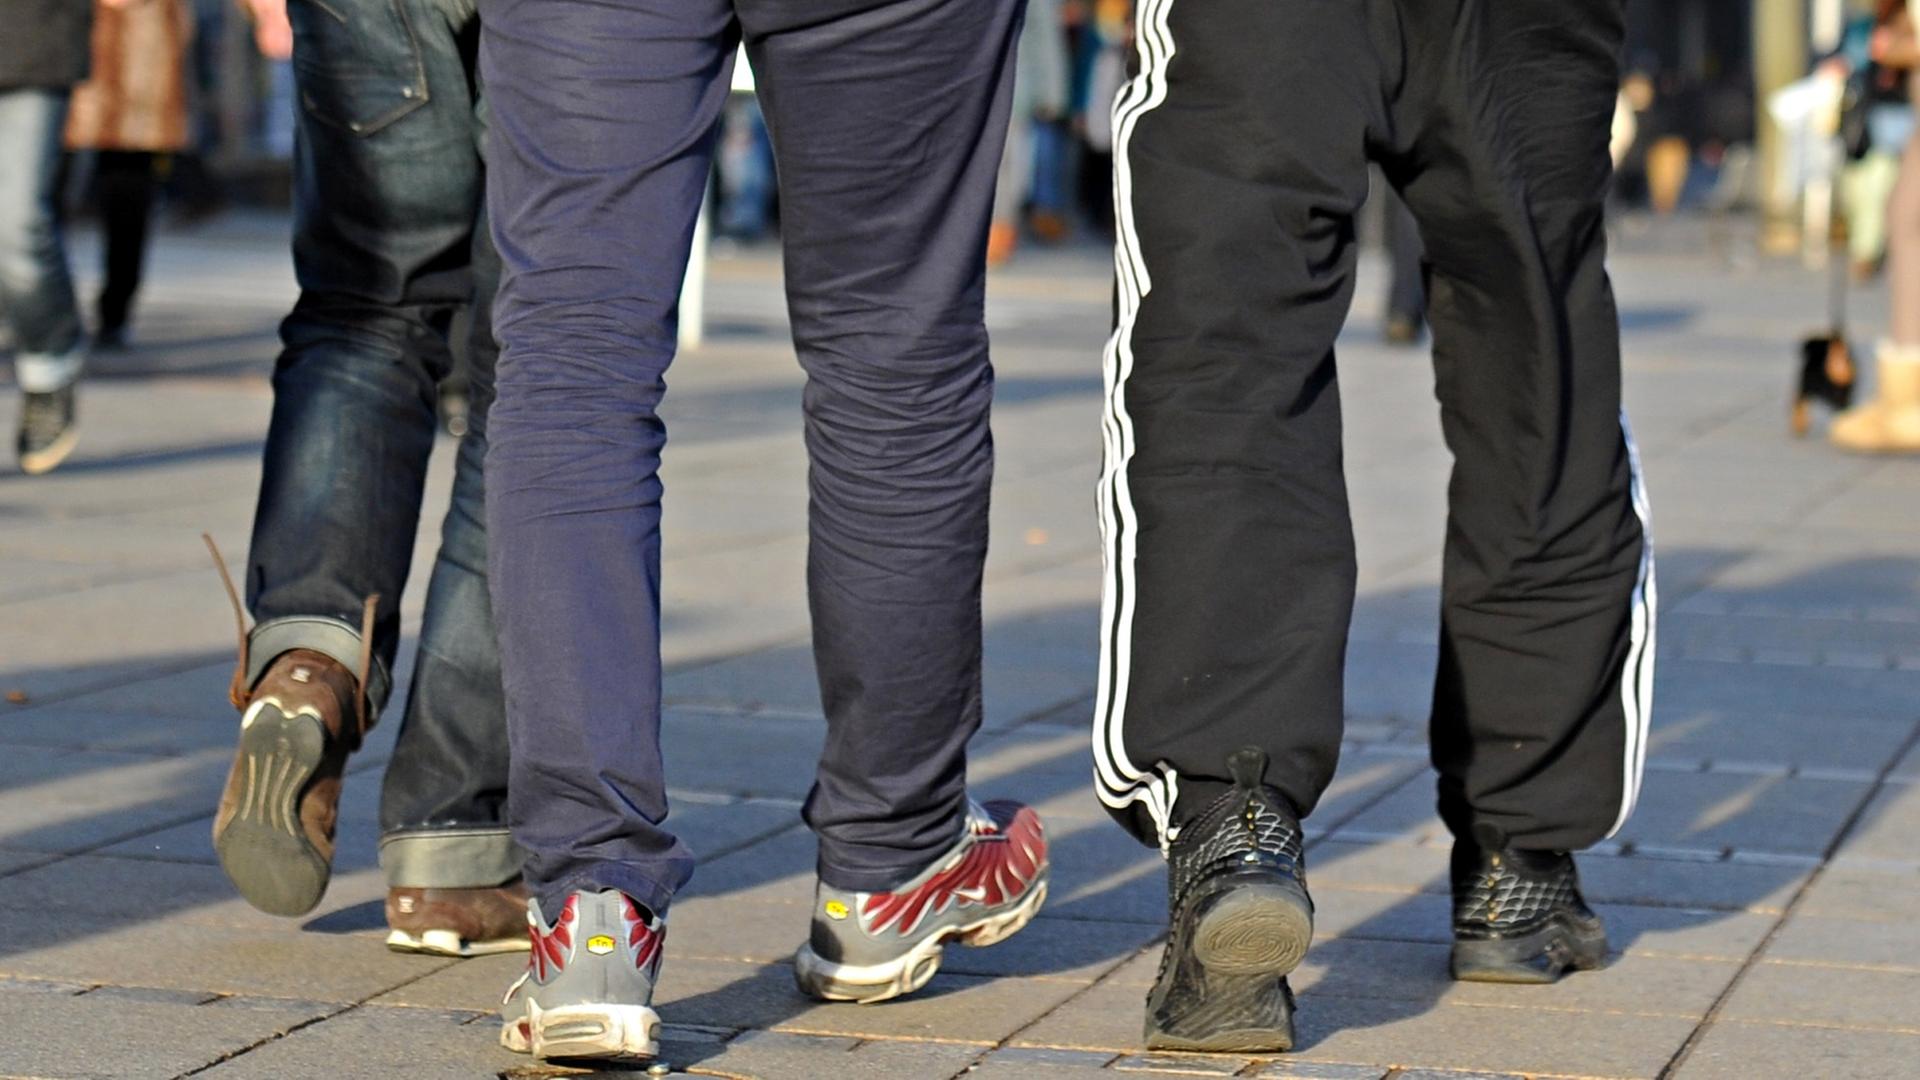 Das Bild zeigt die Beine der drei, nur einer von ihnen trägt eine Jogginghose.